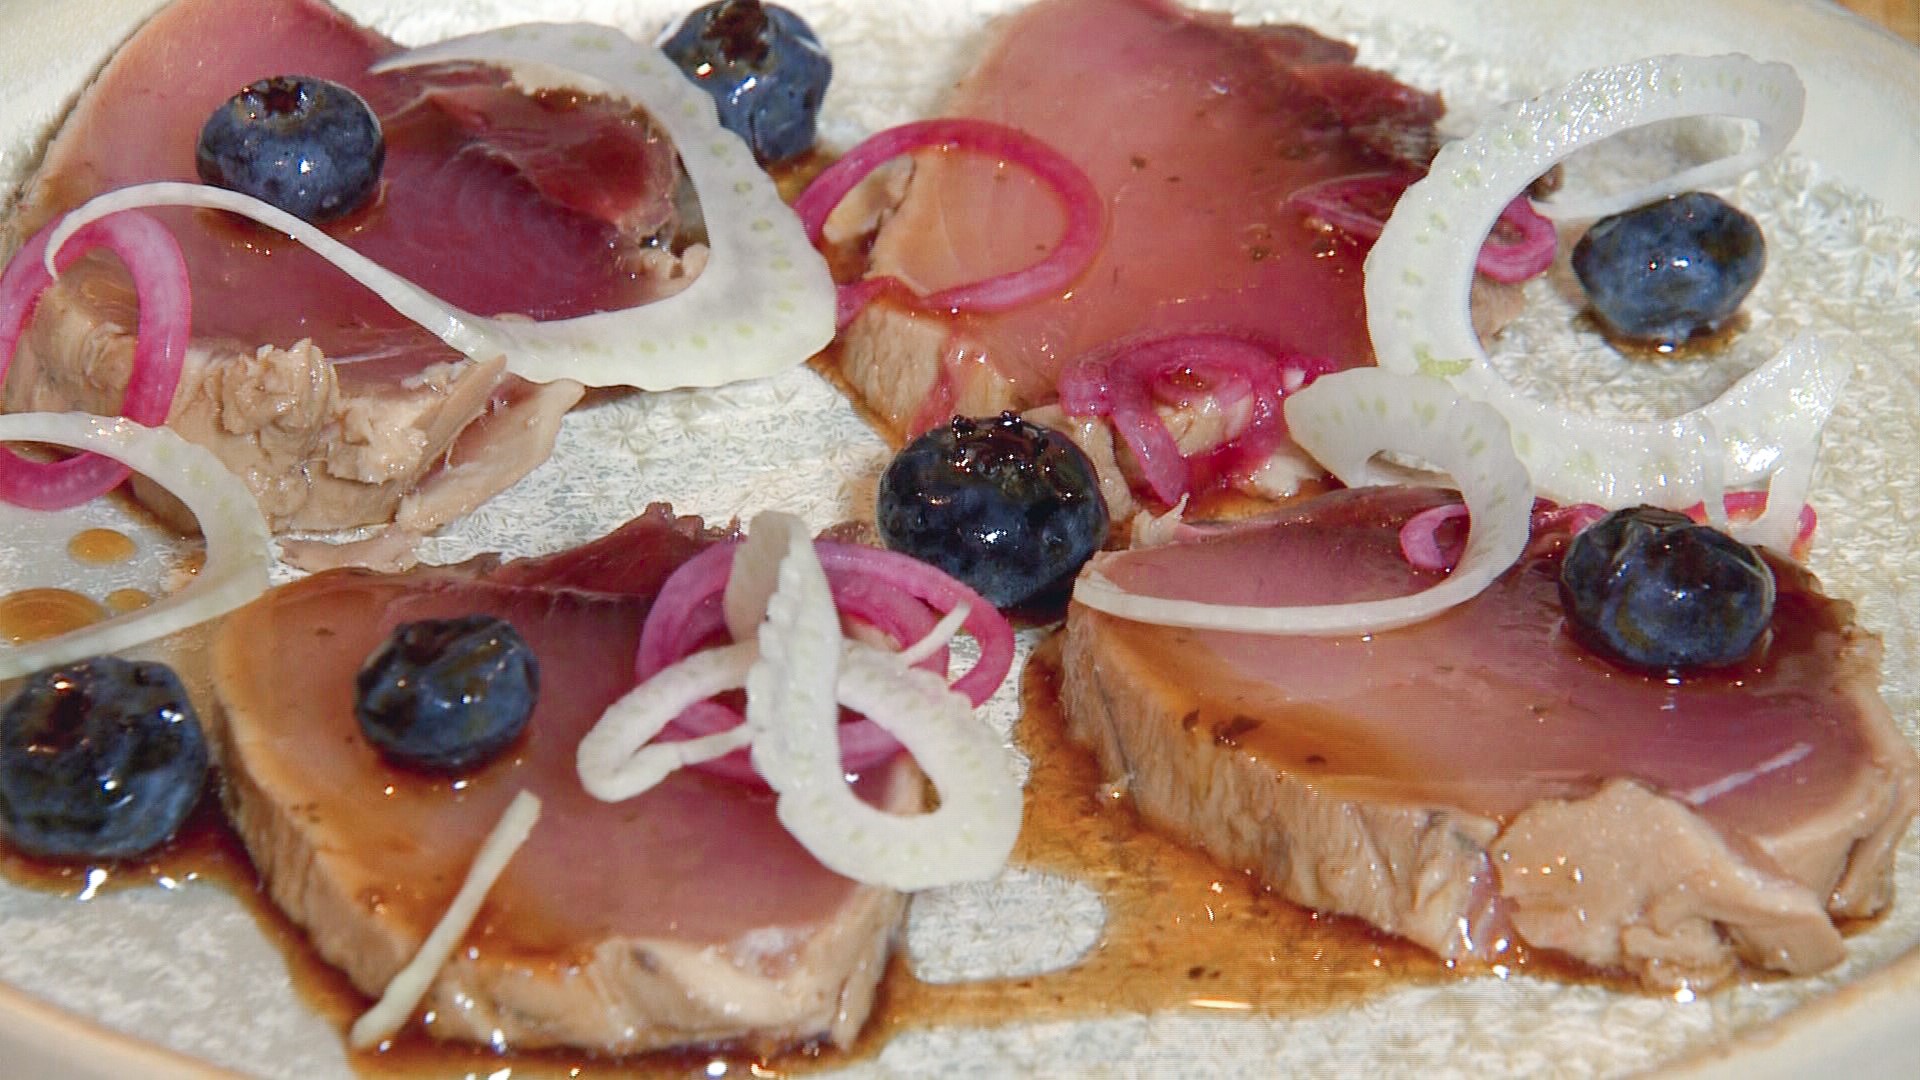 The tuna tataki with blueberry ponzu uses fresh produce from Walmart. Sponsored by Walmart